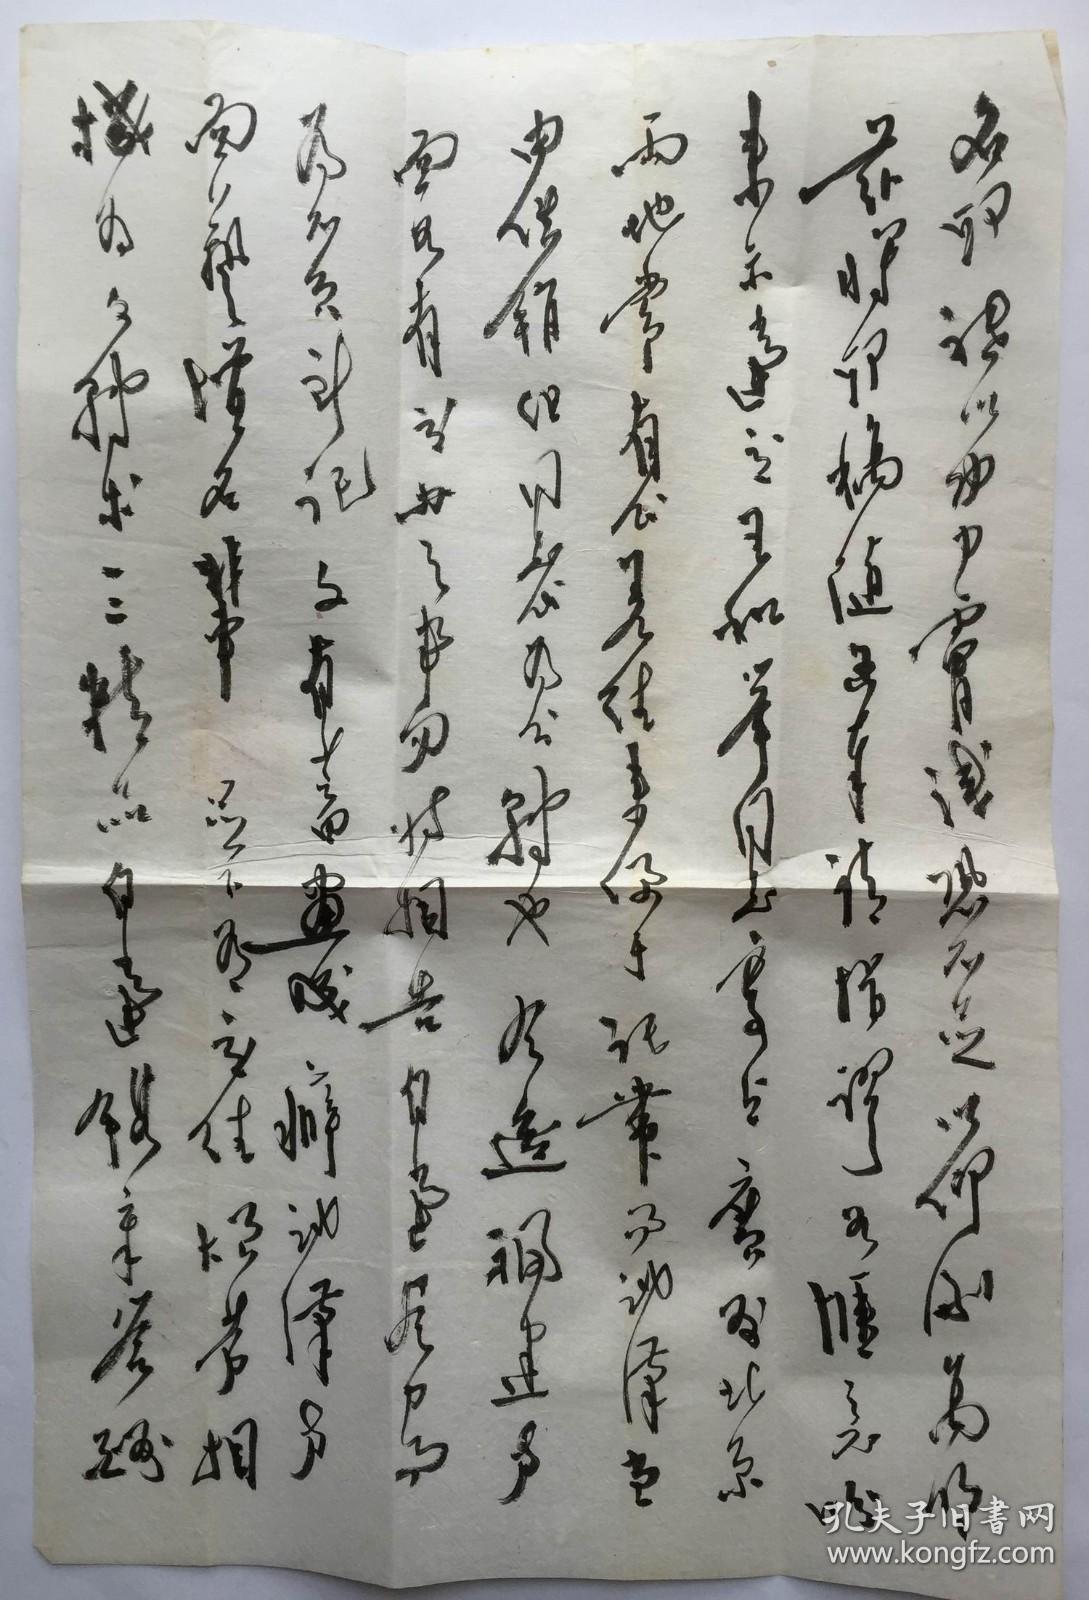 周哲文 (1916-2001年)，当代著名书法篆刻家，祖籍福建长乐，生于福州。

21x32cmx3页，宣纸，未裱，保真。